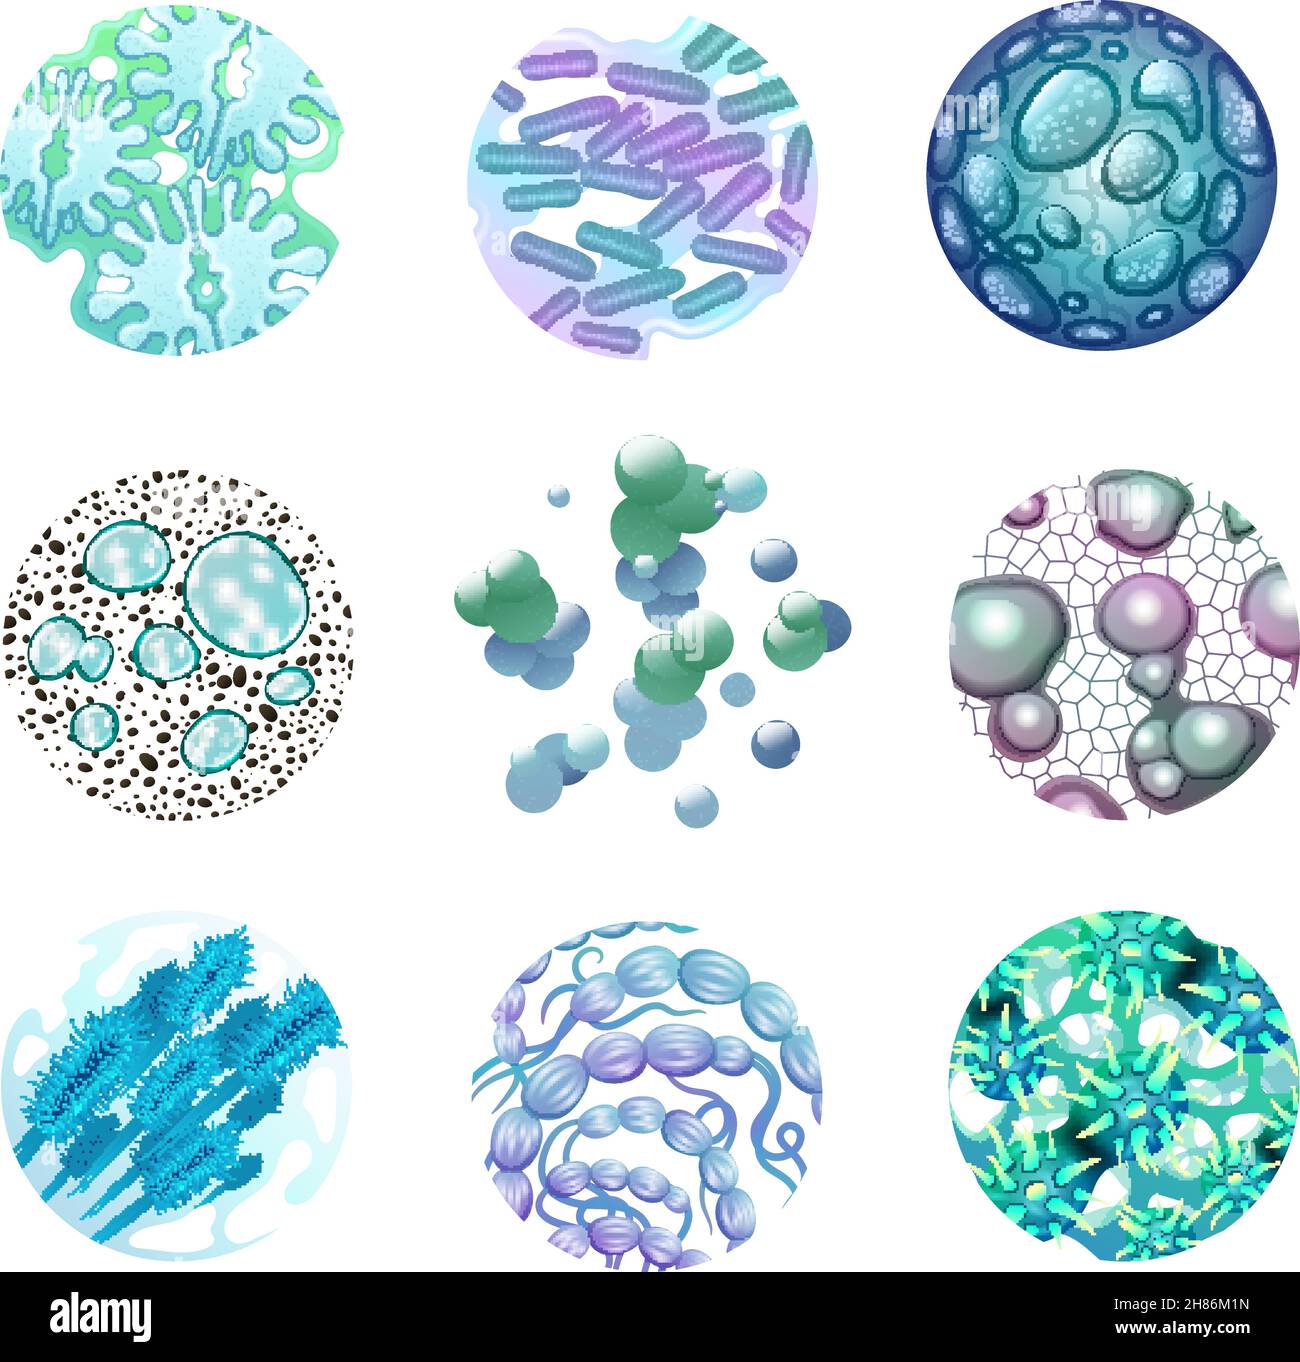 Bactéries autour des icônes ensemble avec des microbes et des virus réalistes isolés illustration vectorielle Illustration de Vecteur